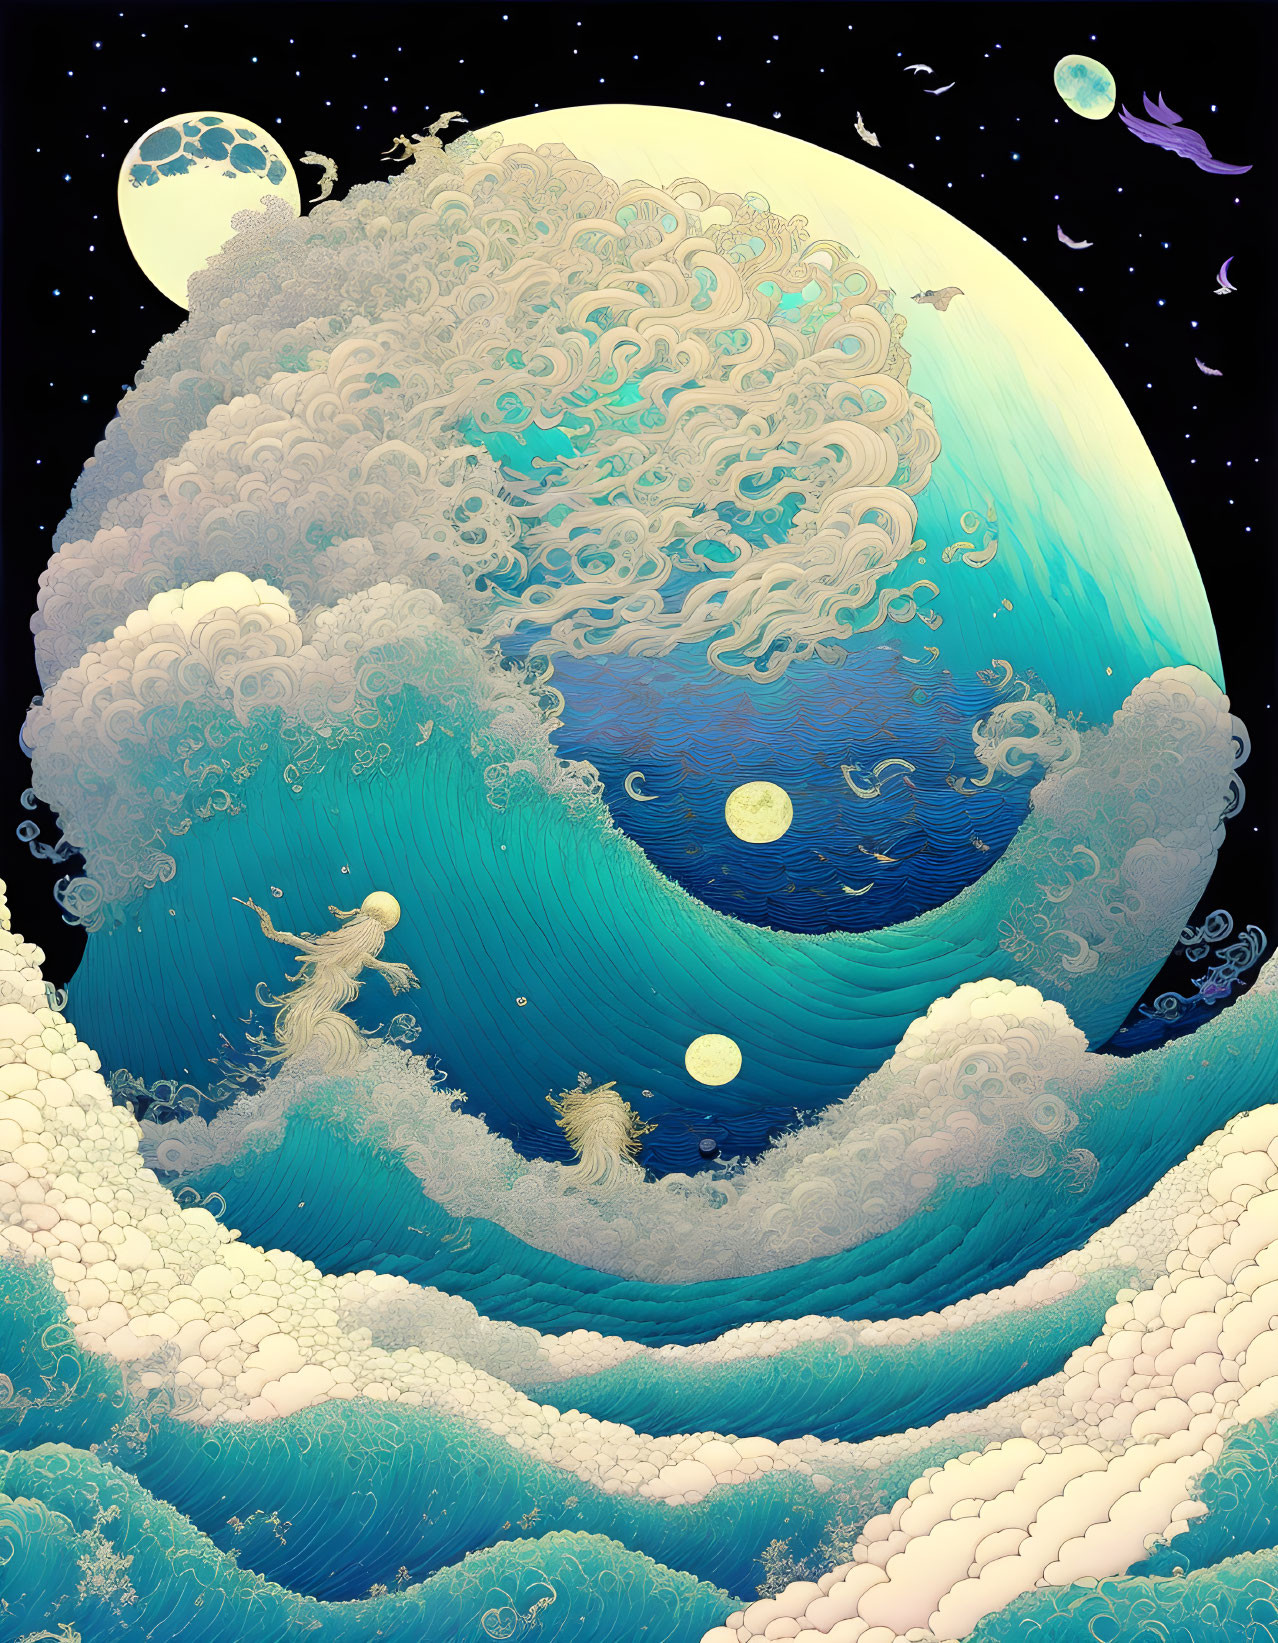 Waves at night big moon